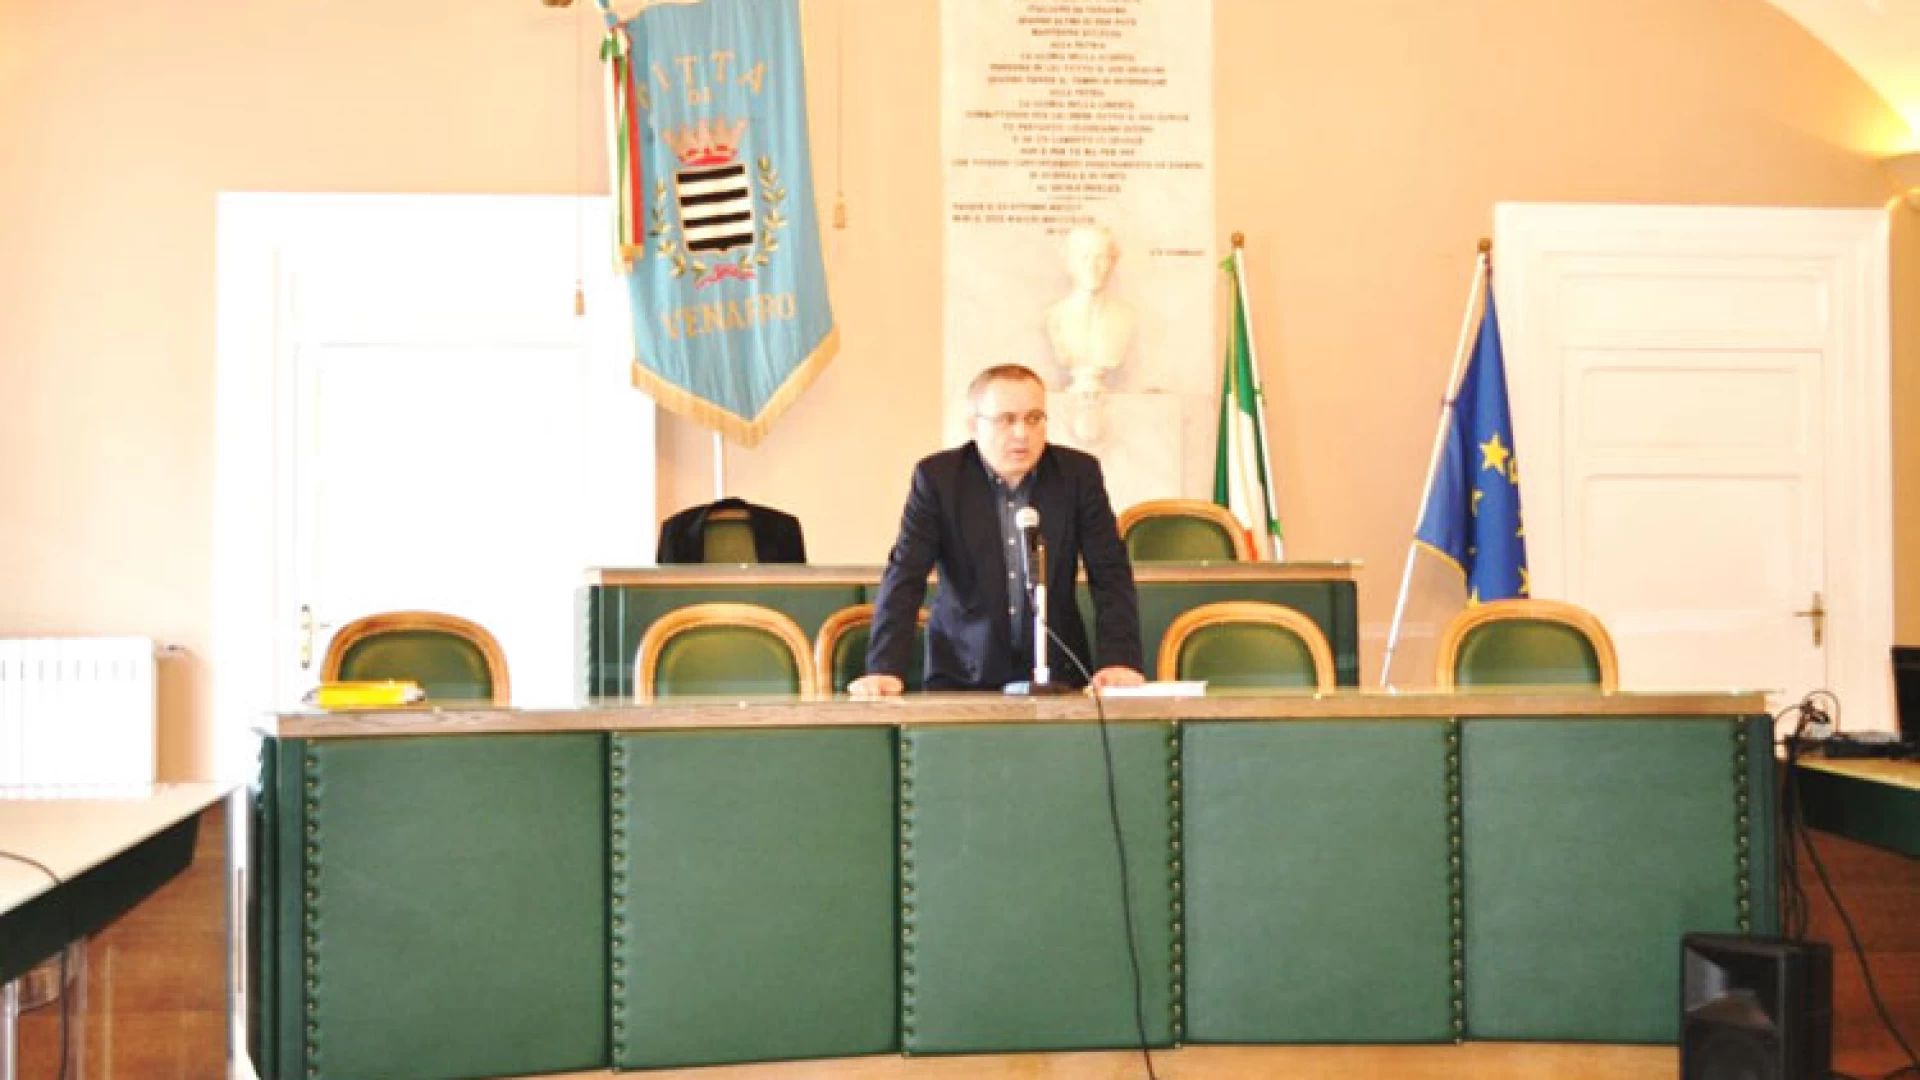 Venafro: il sindaco Antonio Sorbo diffida la Regione Molise. Il termovalorizzatore di Pozzilli va chiuso.